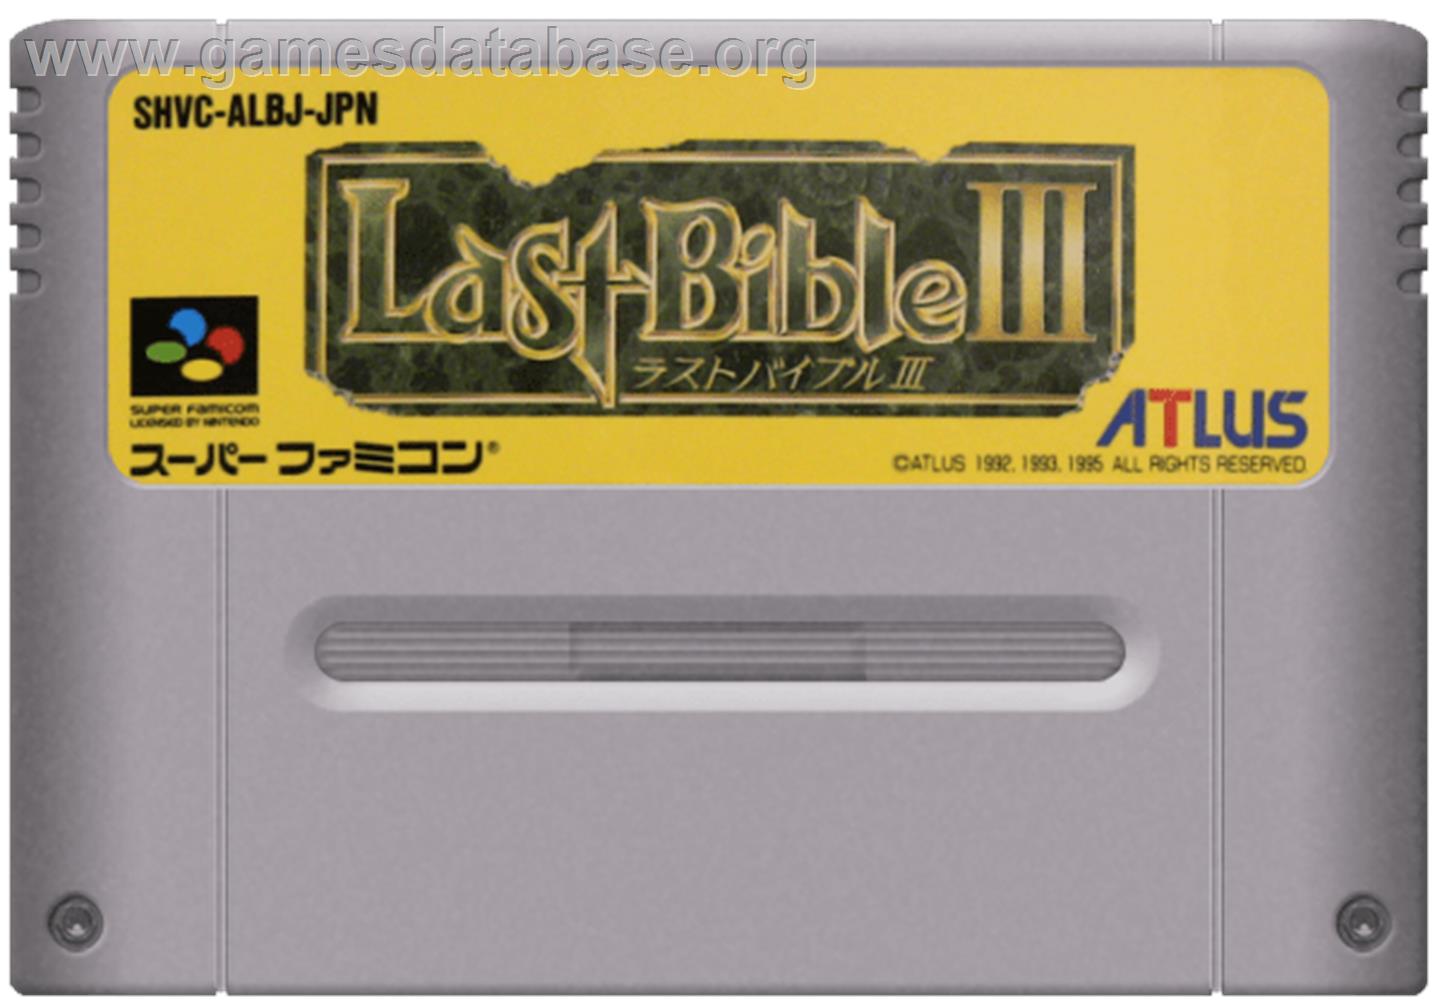 Megami Tensei Gaiden: Last Bible III - Nintendo SNES - Artwork - Cartridge